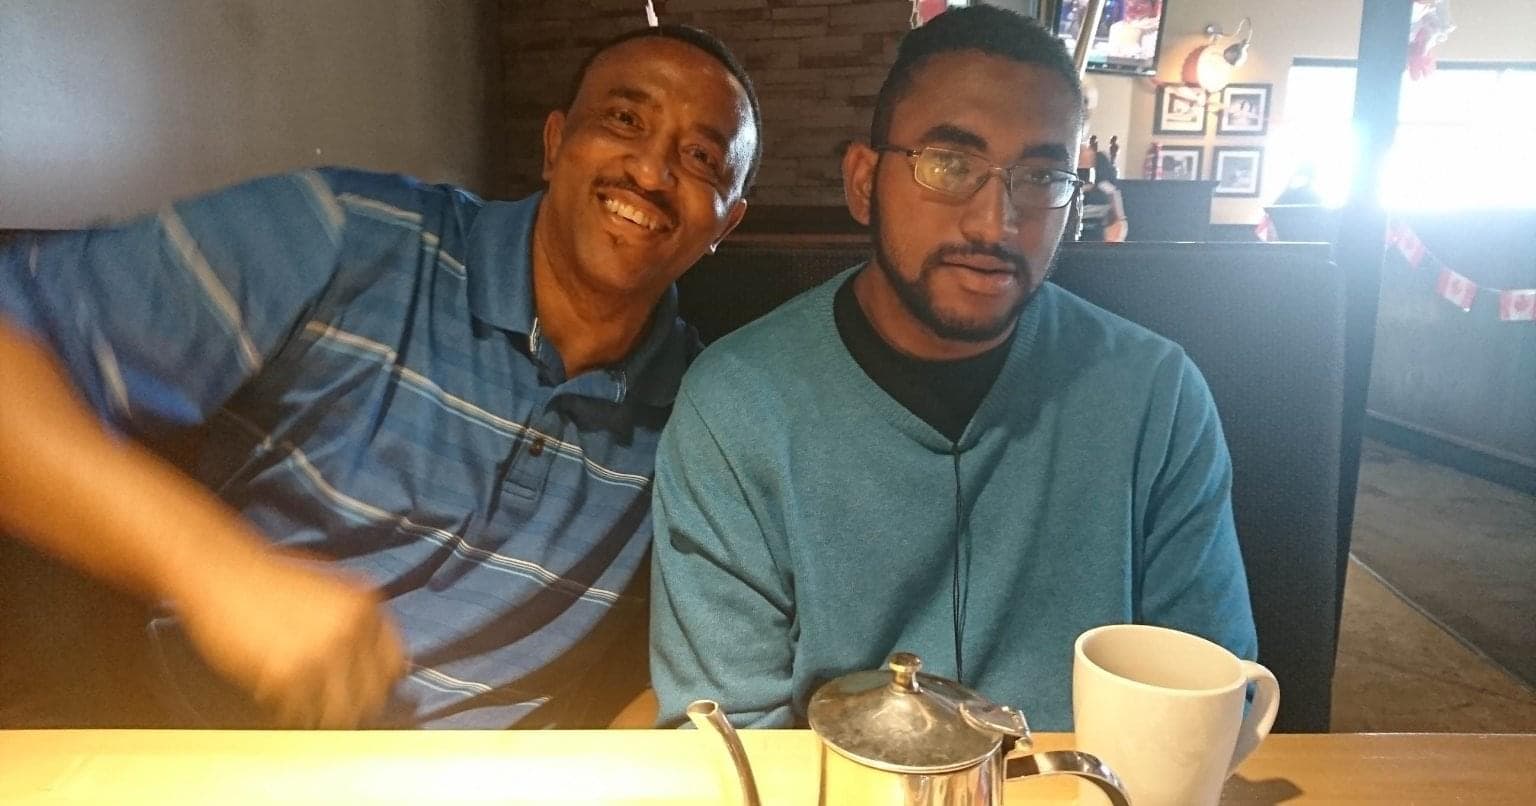  Deux hommes noirs assis sur une banquette dans un restaurant. Les deux portent un chandail bleu. Une théière et une tasse de café se trouvent sur la table. 